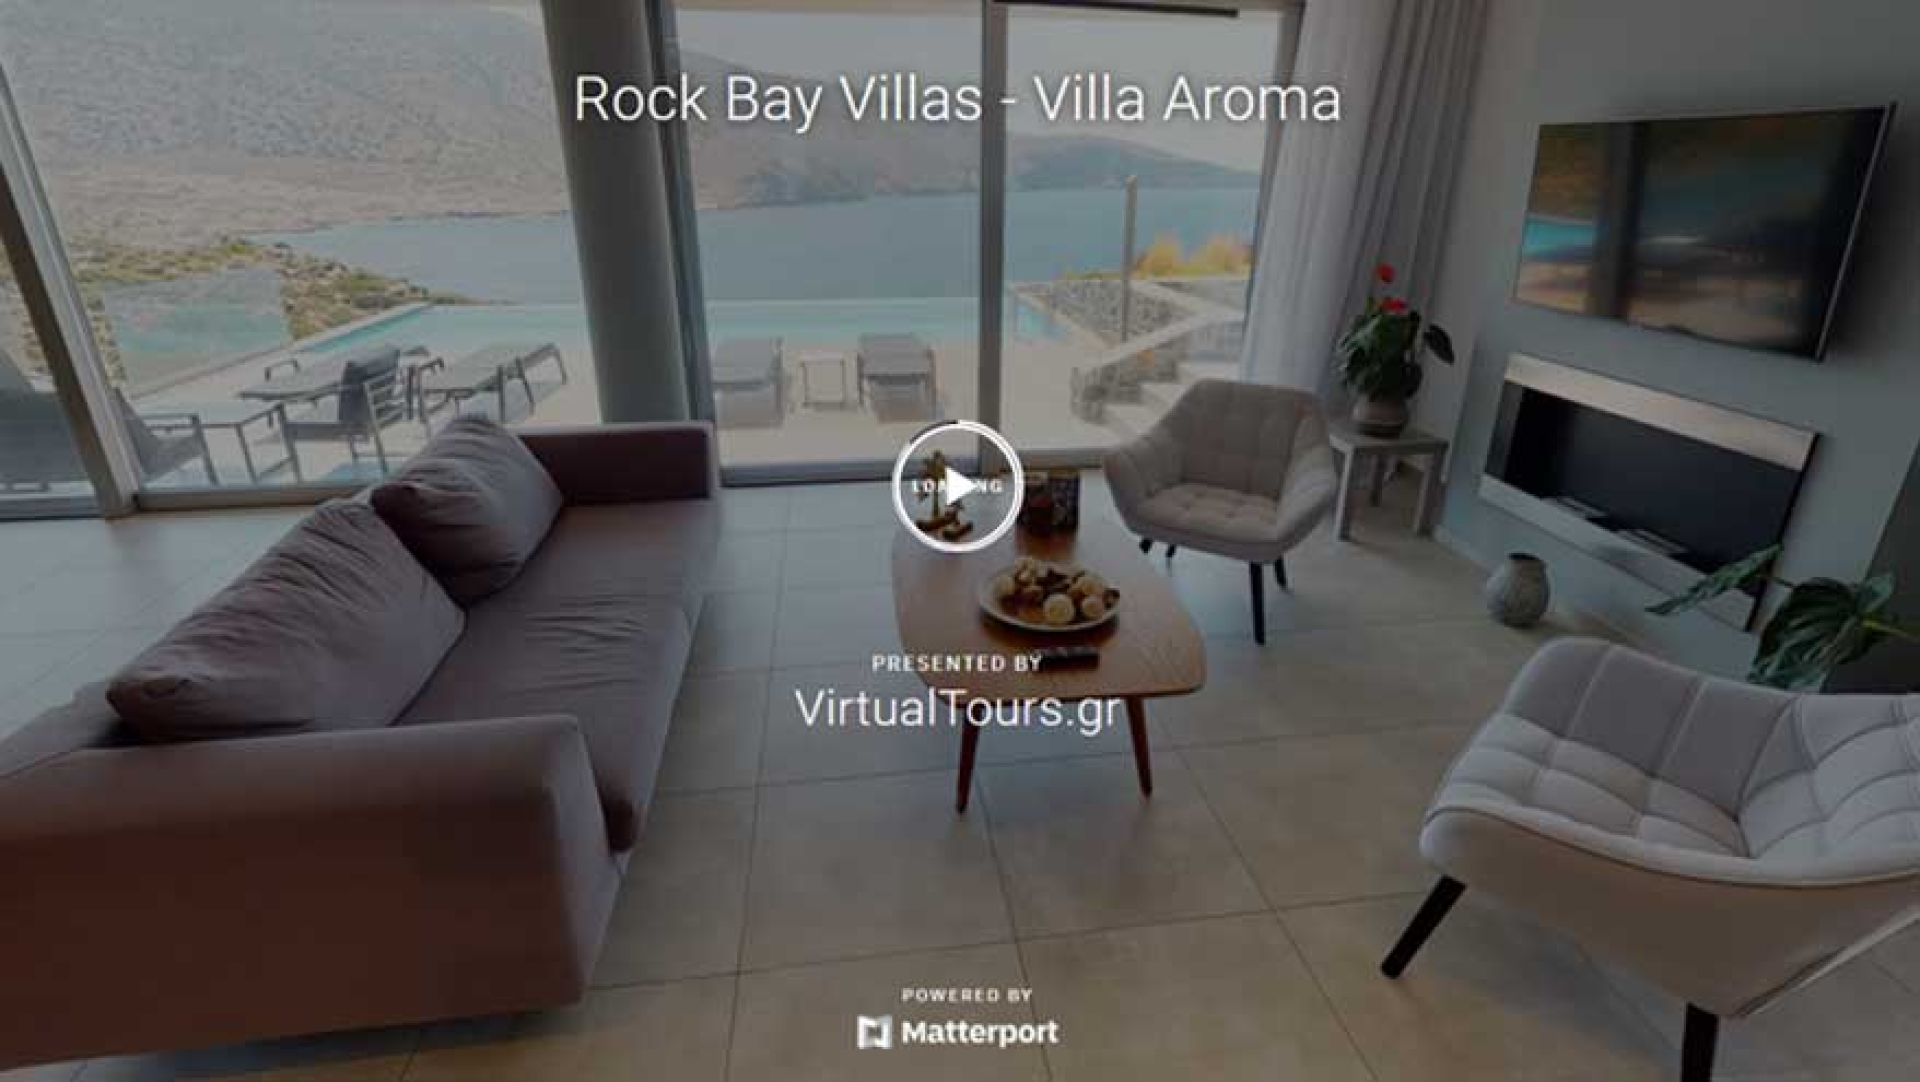 Rock bay villa - Villa Aroma